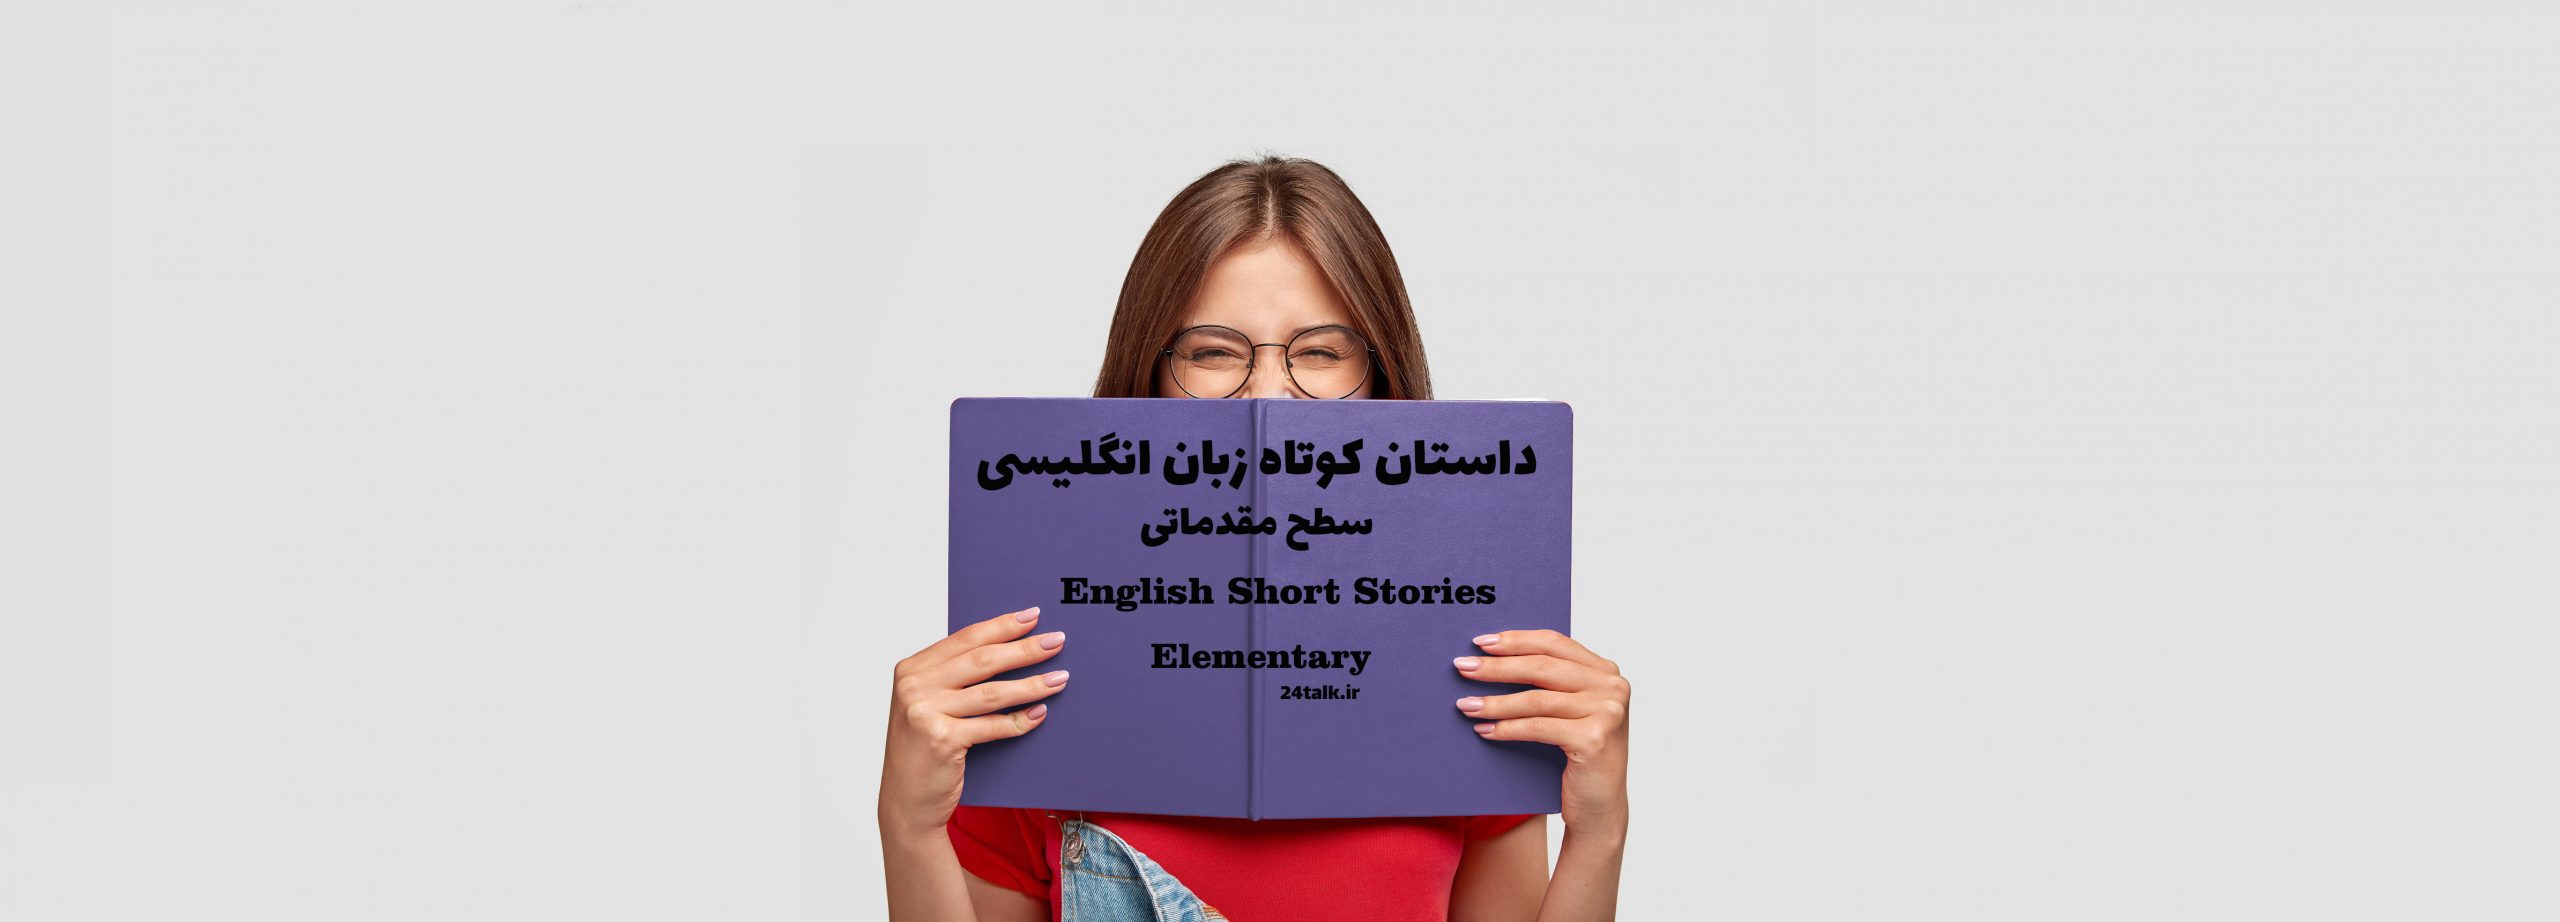 داستان کوتاه انگلیسی در مورد مدرسه